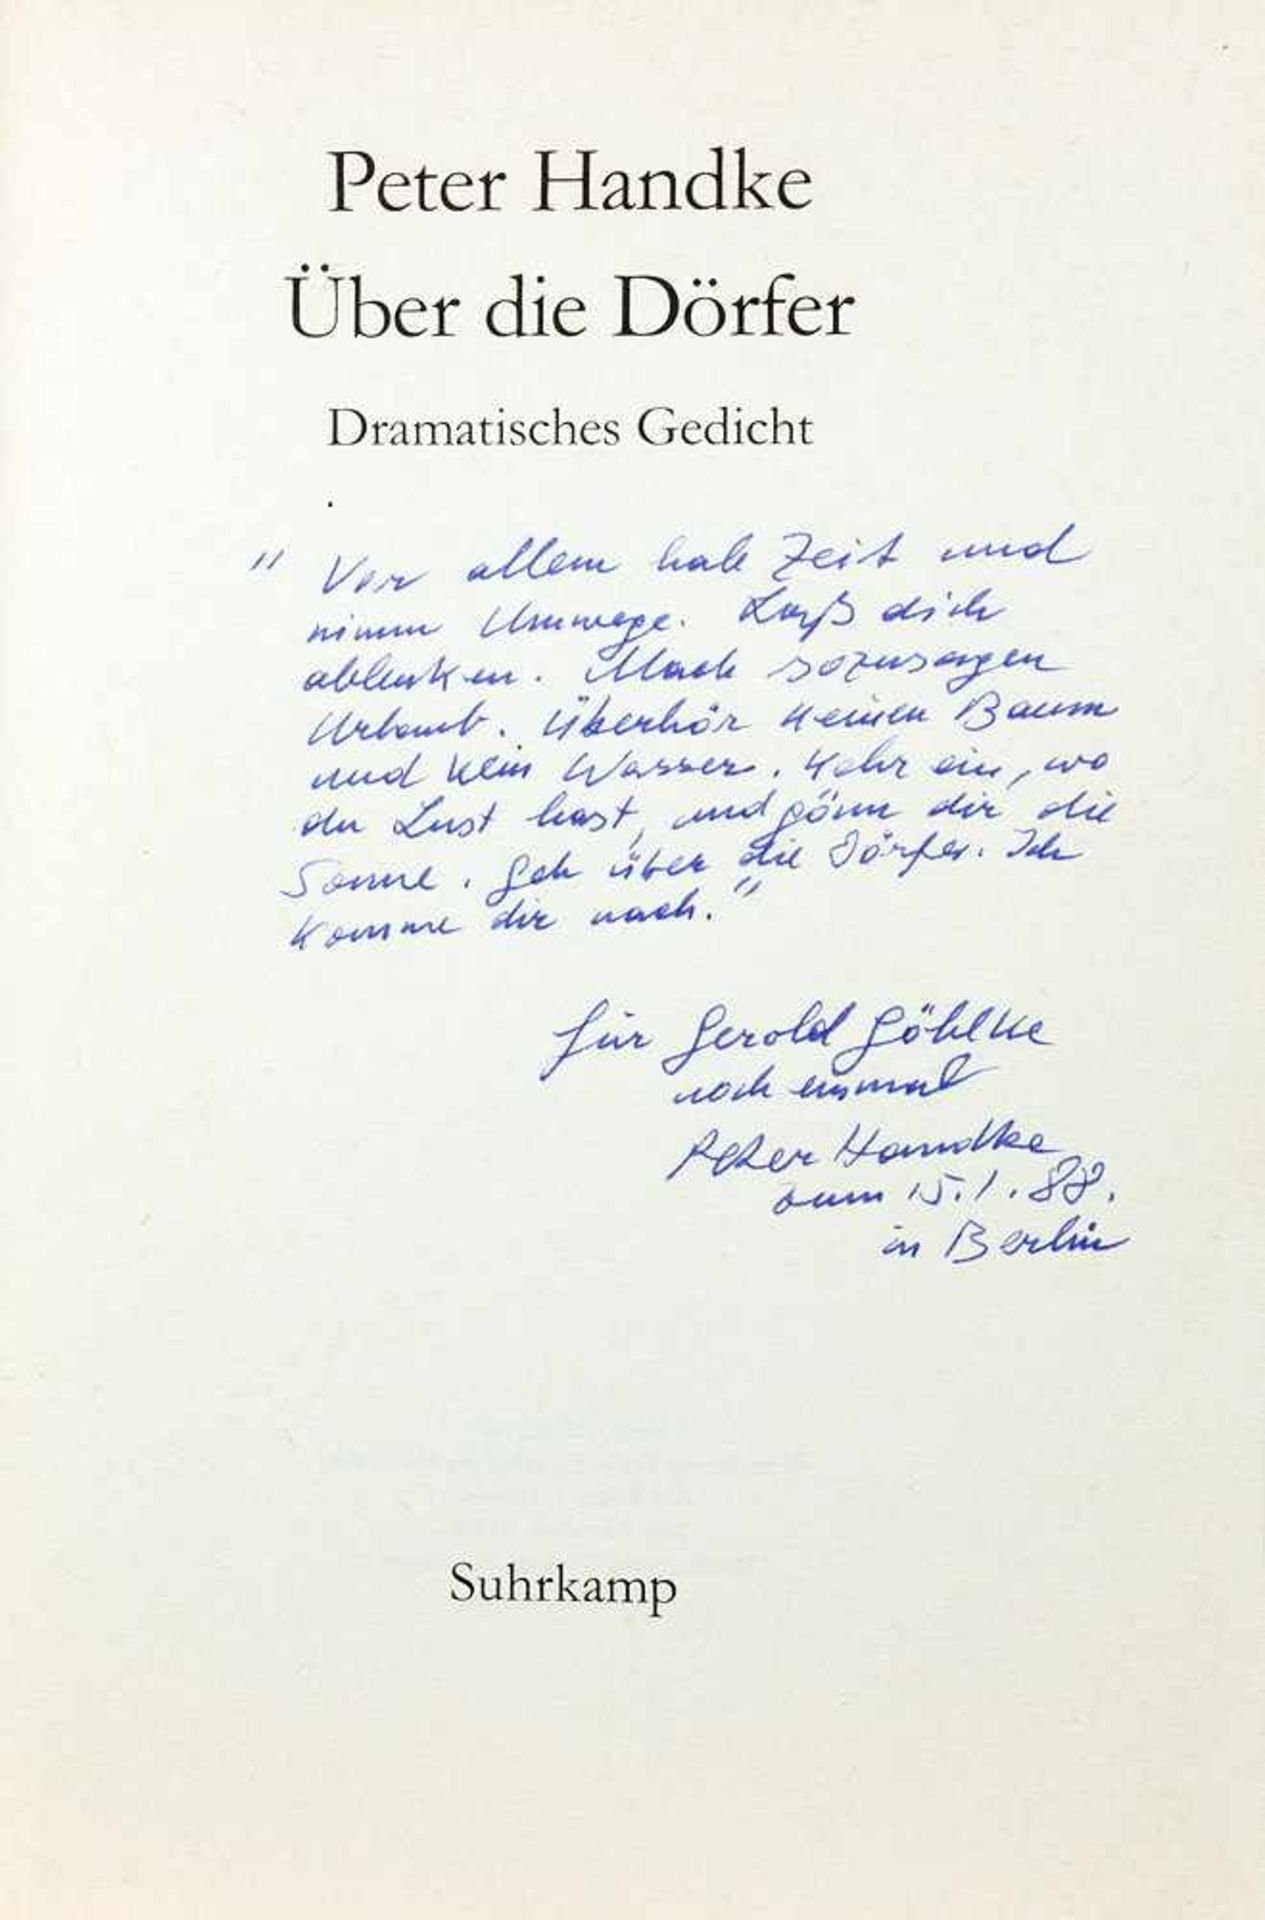 Peter Handke. Über die Dörfer. Dramatisches Gedicht. Frankfurt am Main, Suhrkamp 1981.